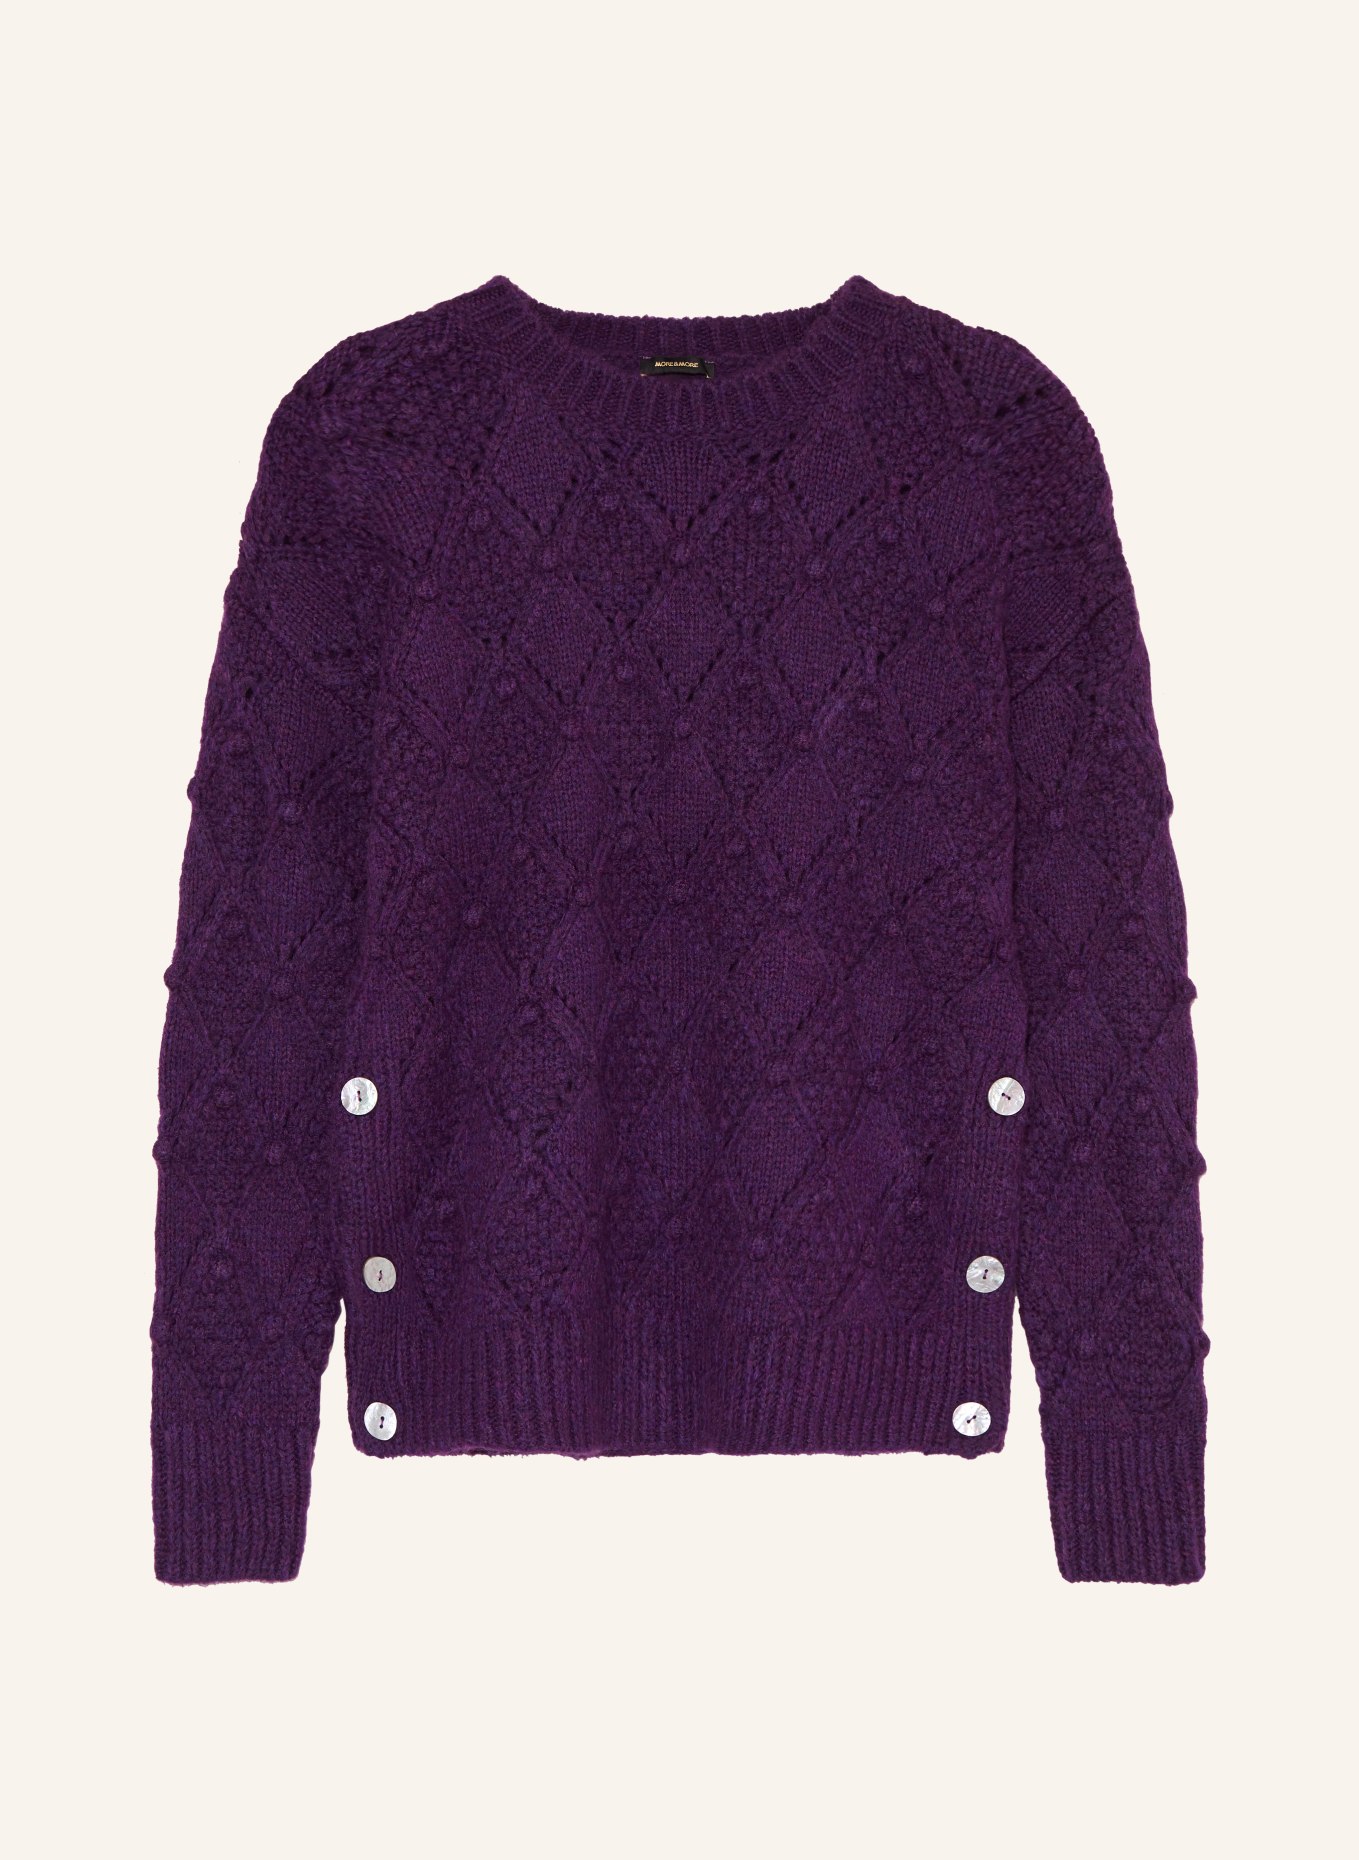 MORE & MORE Pullover, Farbe: DUNKELLILA (Bild 1)